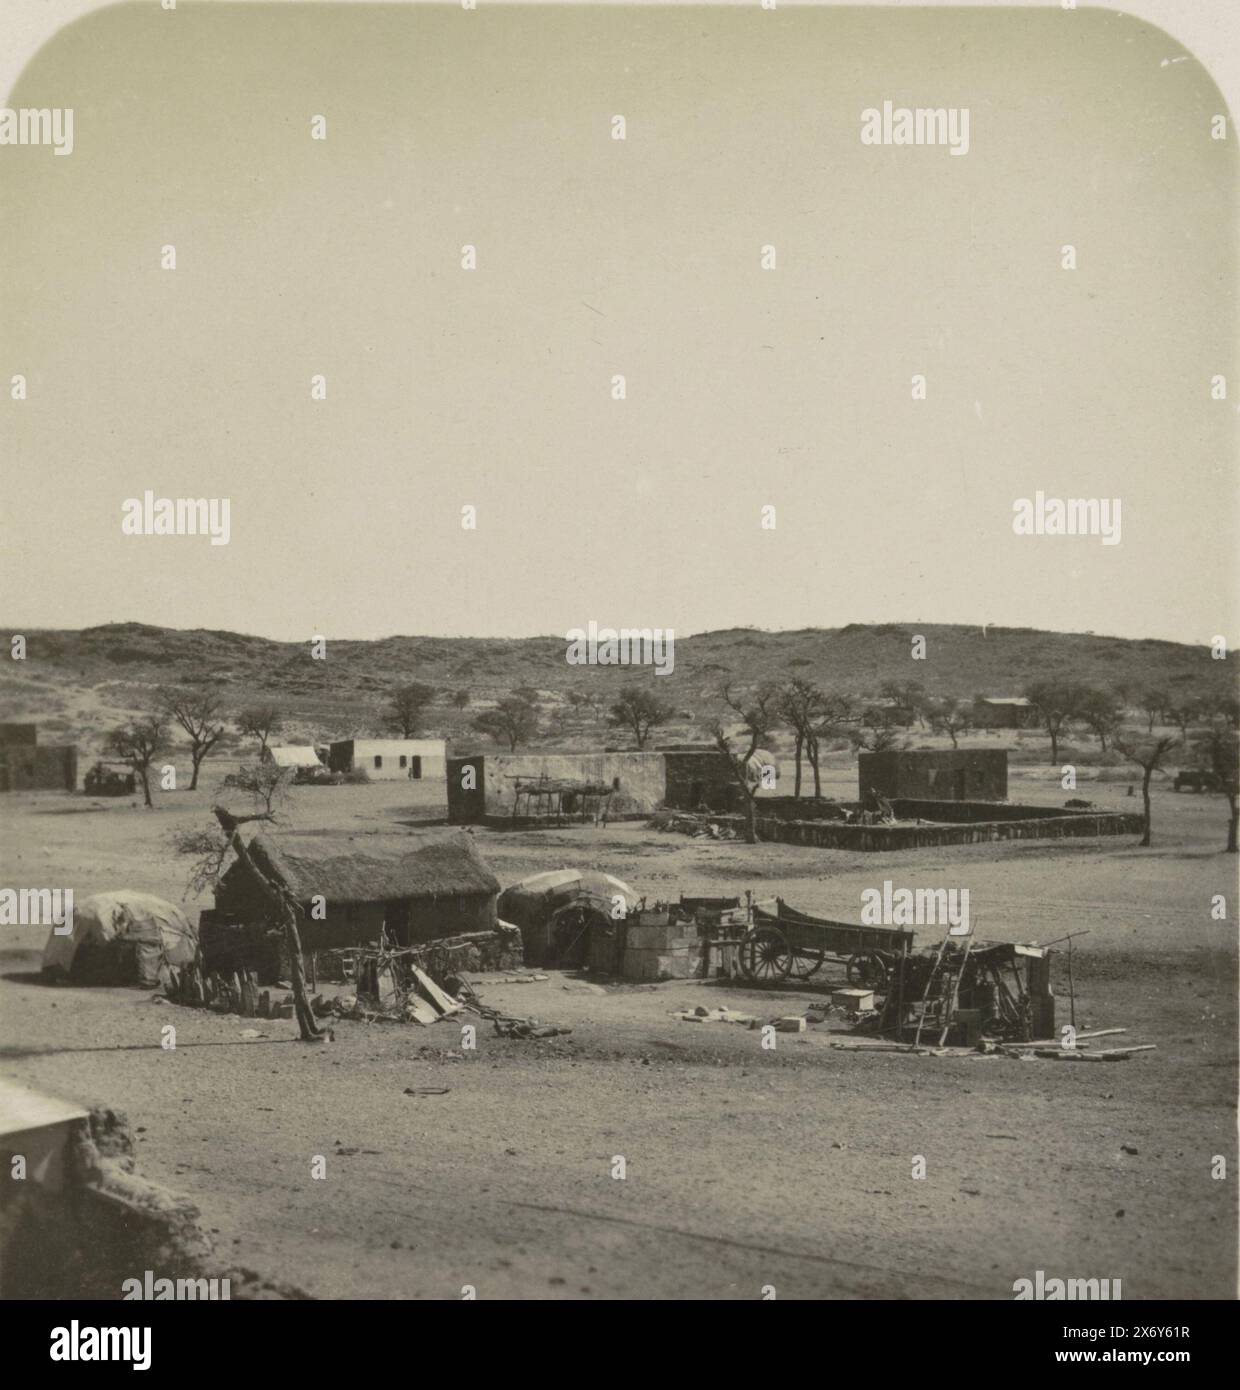 Vista di una casa a Rehoboth, Sud-Ovest dell'Africa. In basso a destra della foto a destra si legge: R.2826., stereografo, anonimo, sconosciuto, c. 1884 - c. 1914, carta, altezza, 89 mm x larghezza, 180 mm Foto Stock